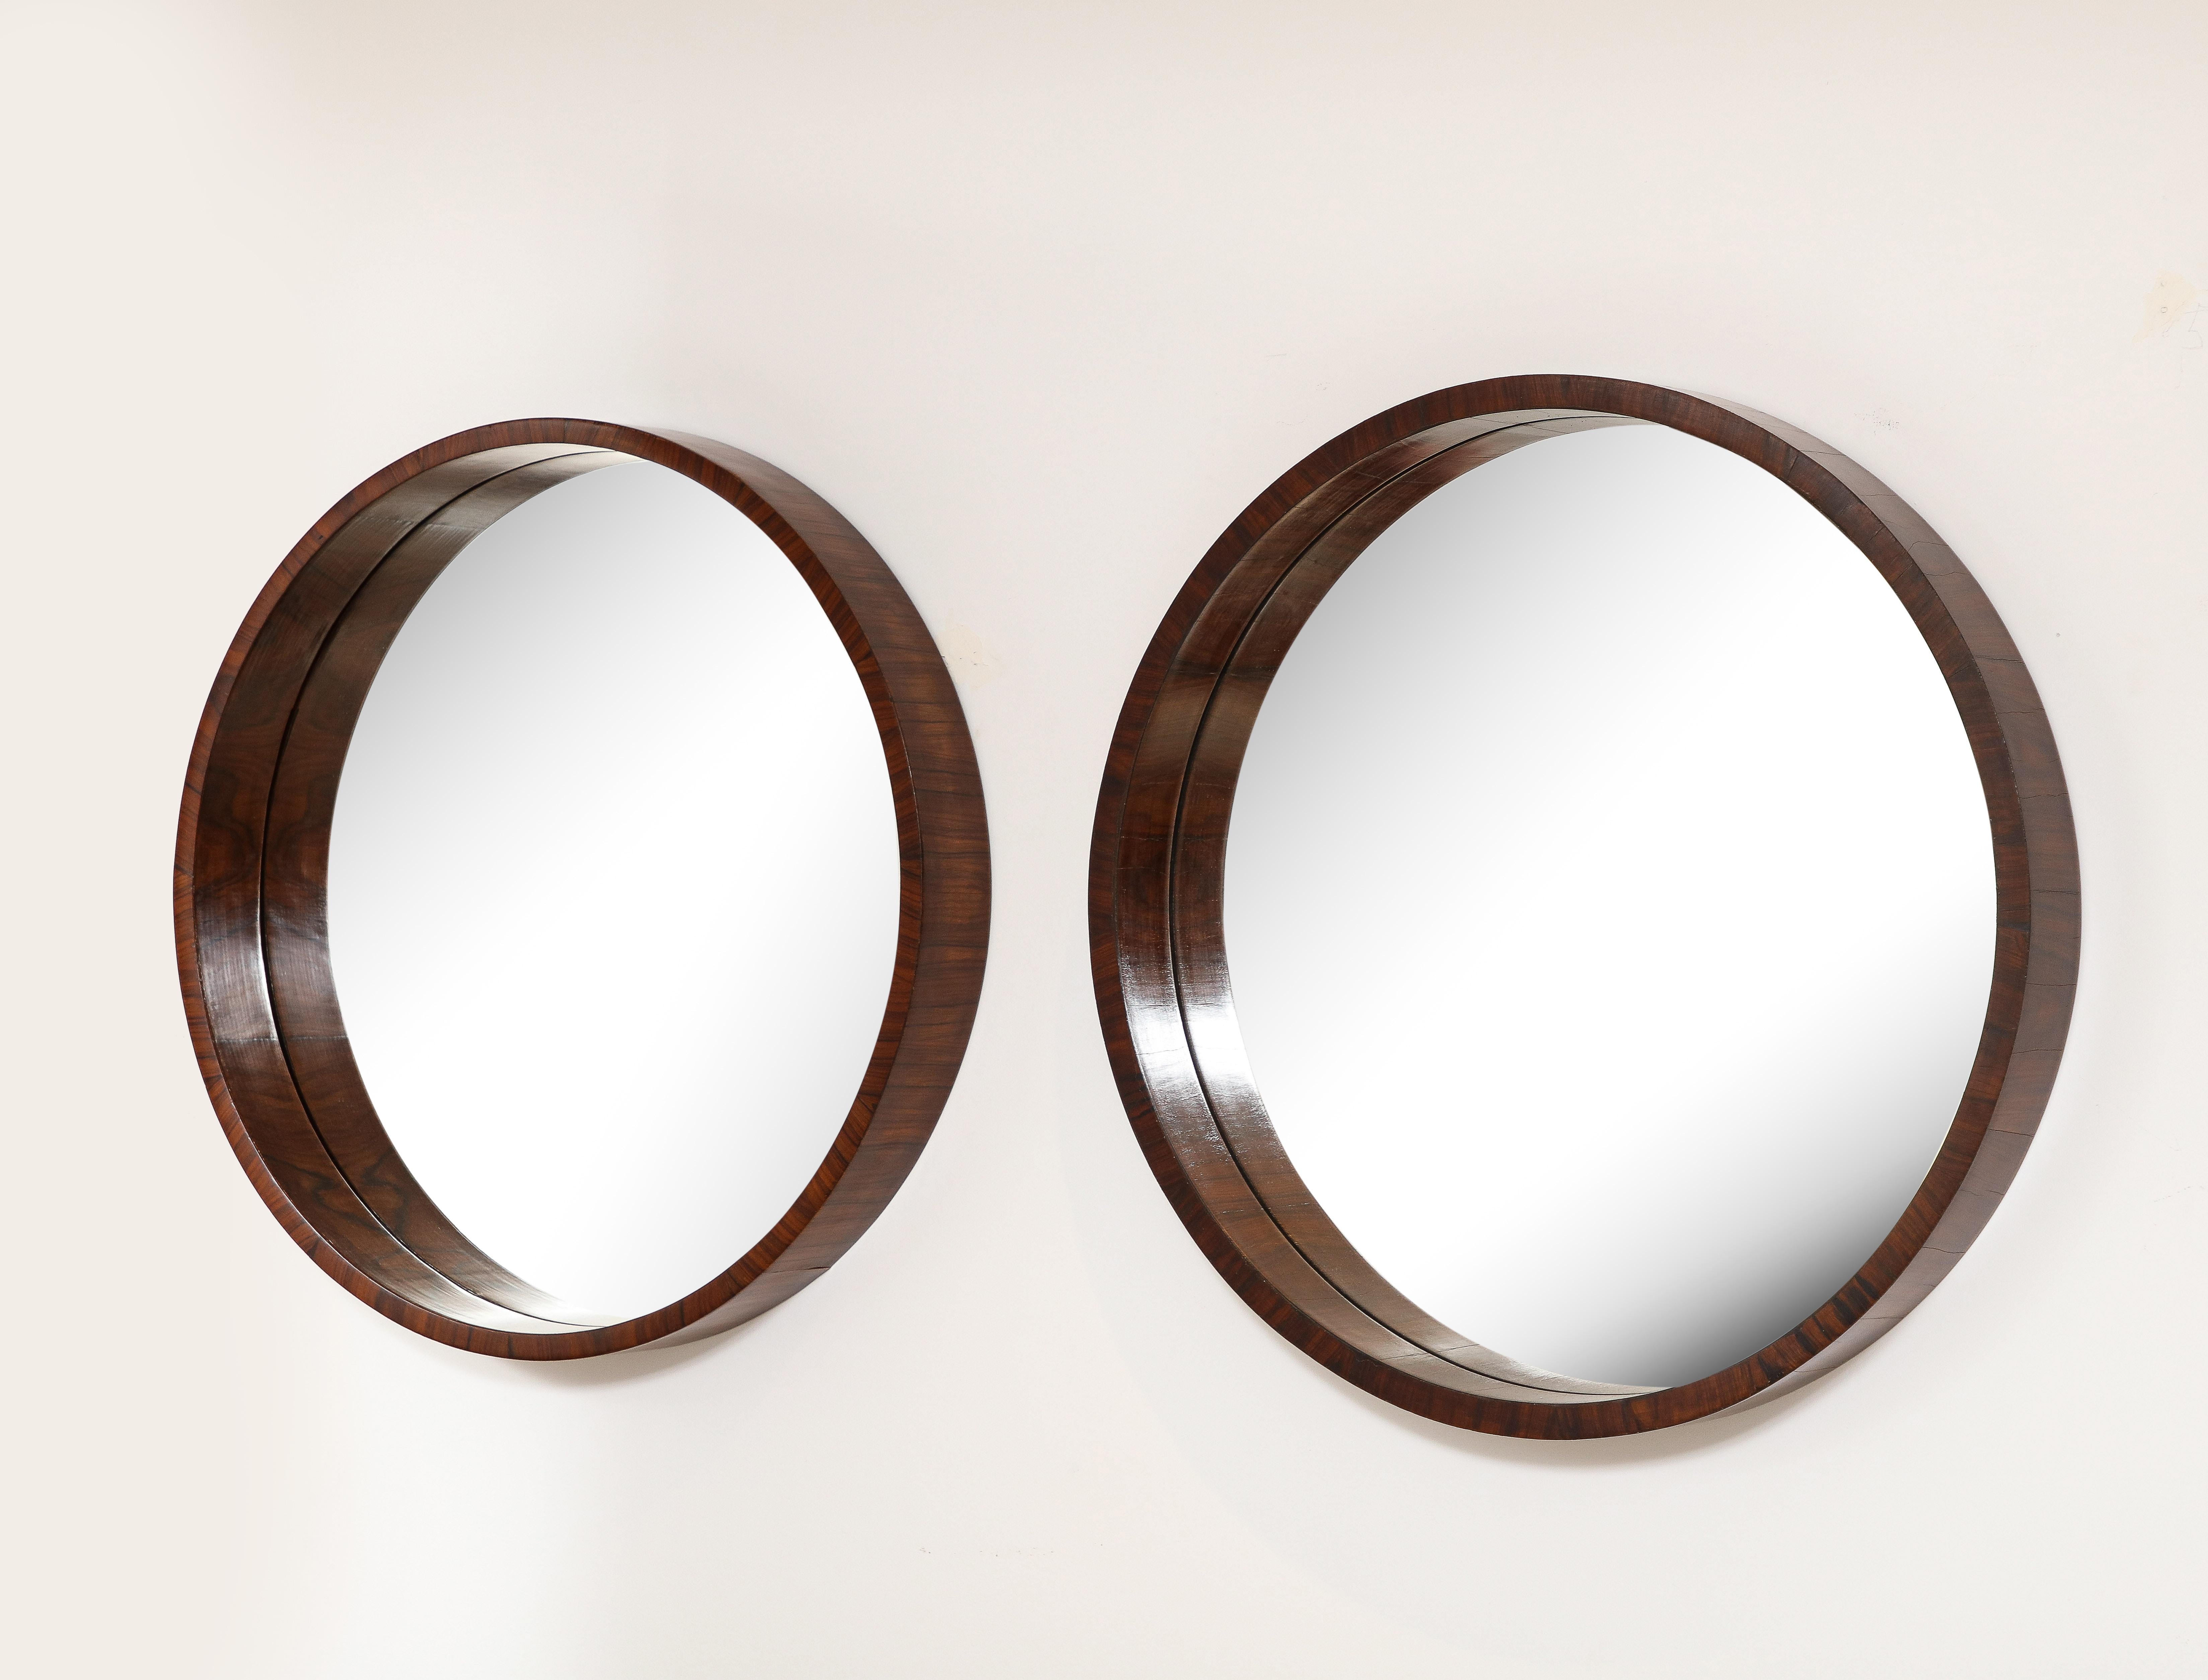 Dieses Paar moderner Massivholzspiegel aus der Mitte des Jahrhunderts ist aus hochwertigem Massivholz gefertigt und verfügt über einen robusten Rahmen.

Was diese Spiegel von anderen üblichen Spiegeln unterscheidet, ist ihre größere Tiefe. Die